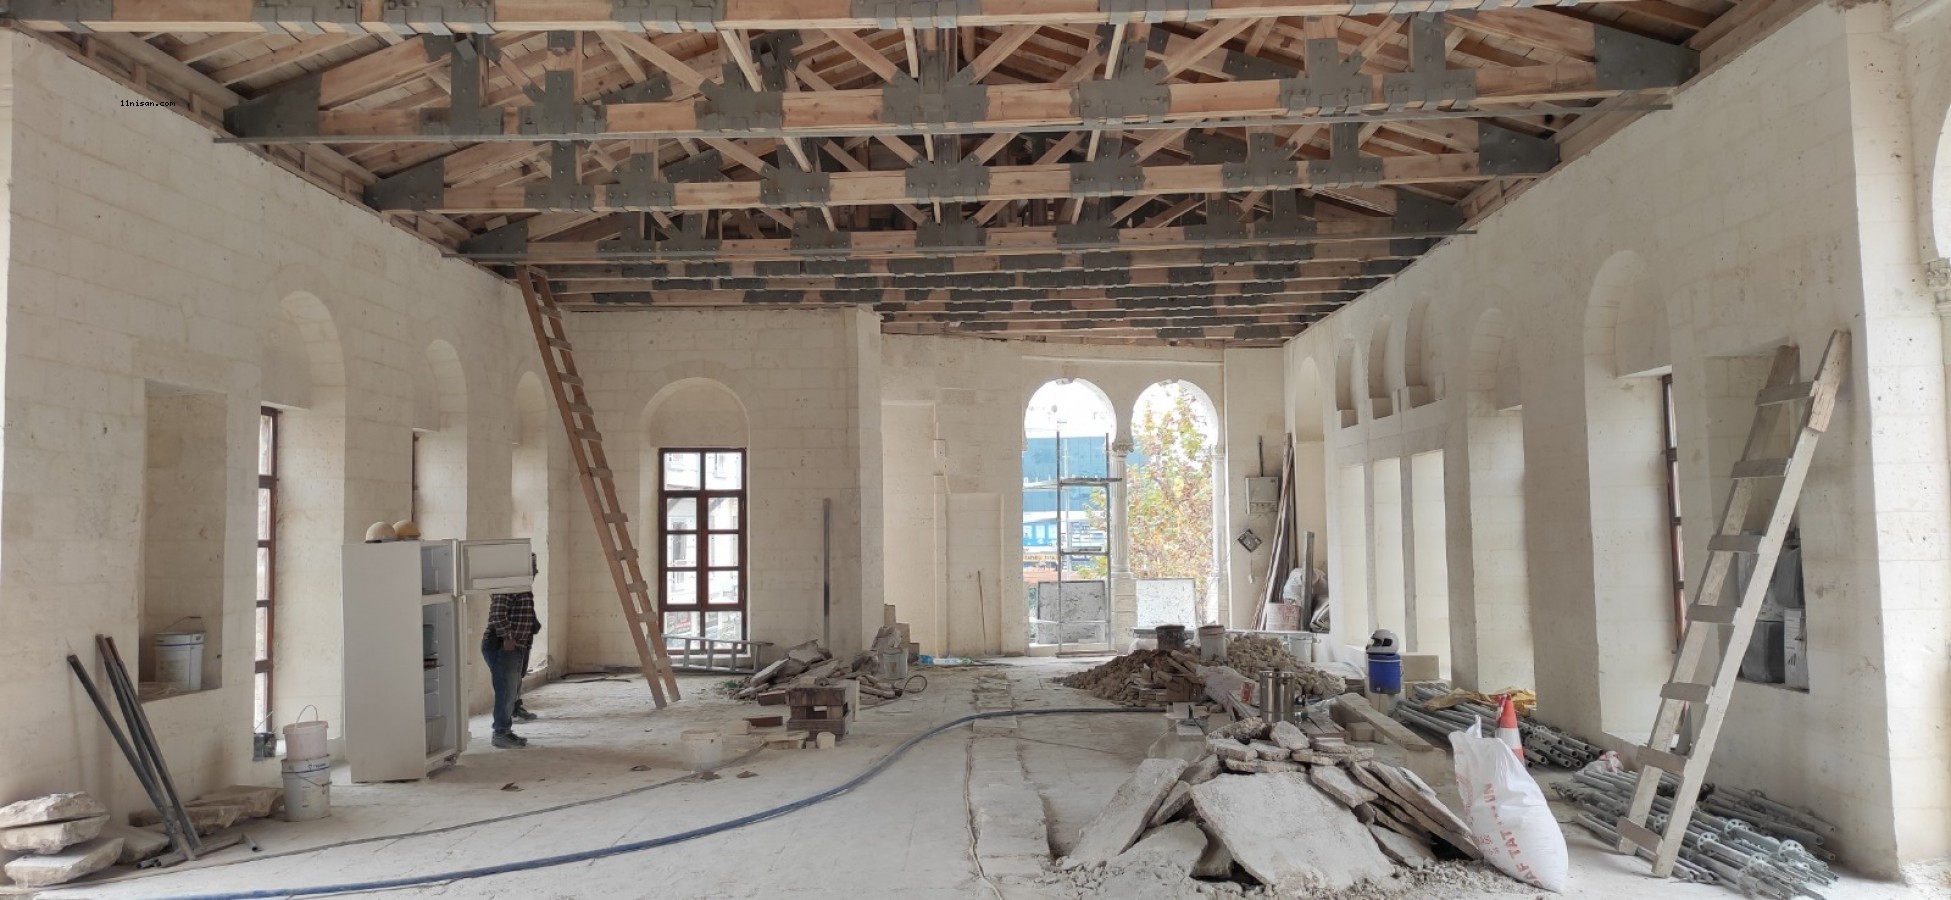 Urfa’da tarihi yapı restore edilip turizme kazandırılacak